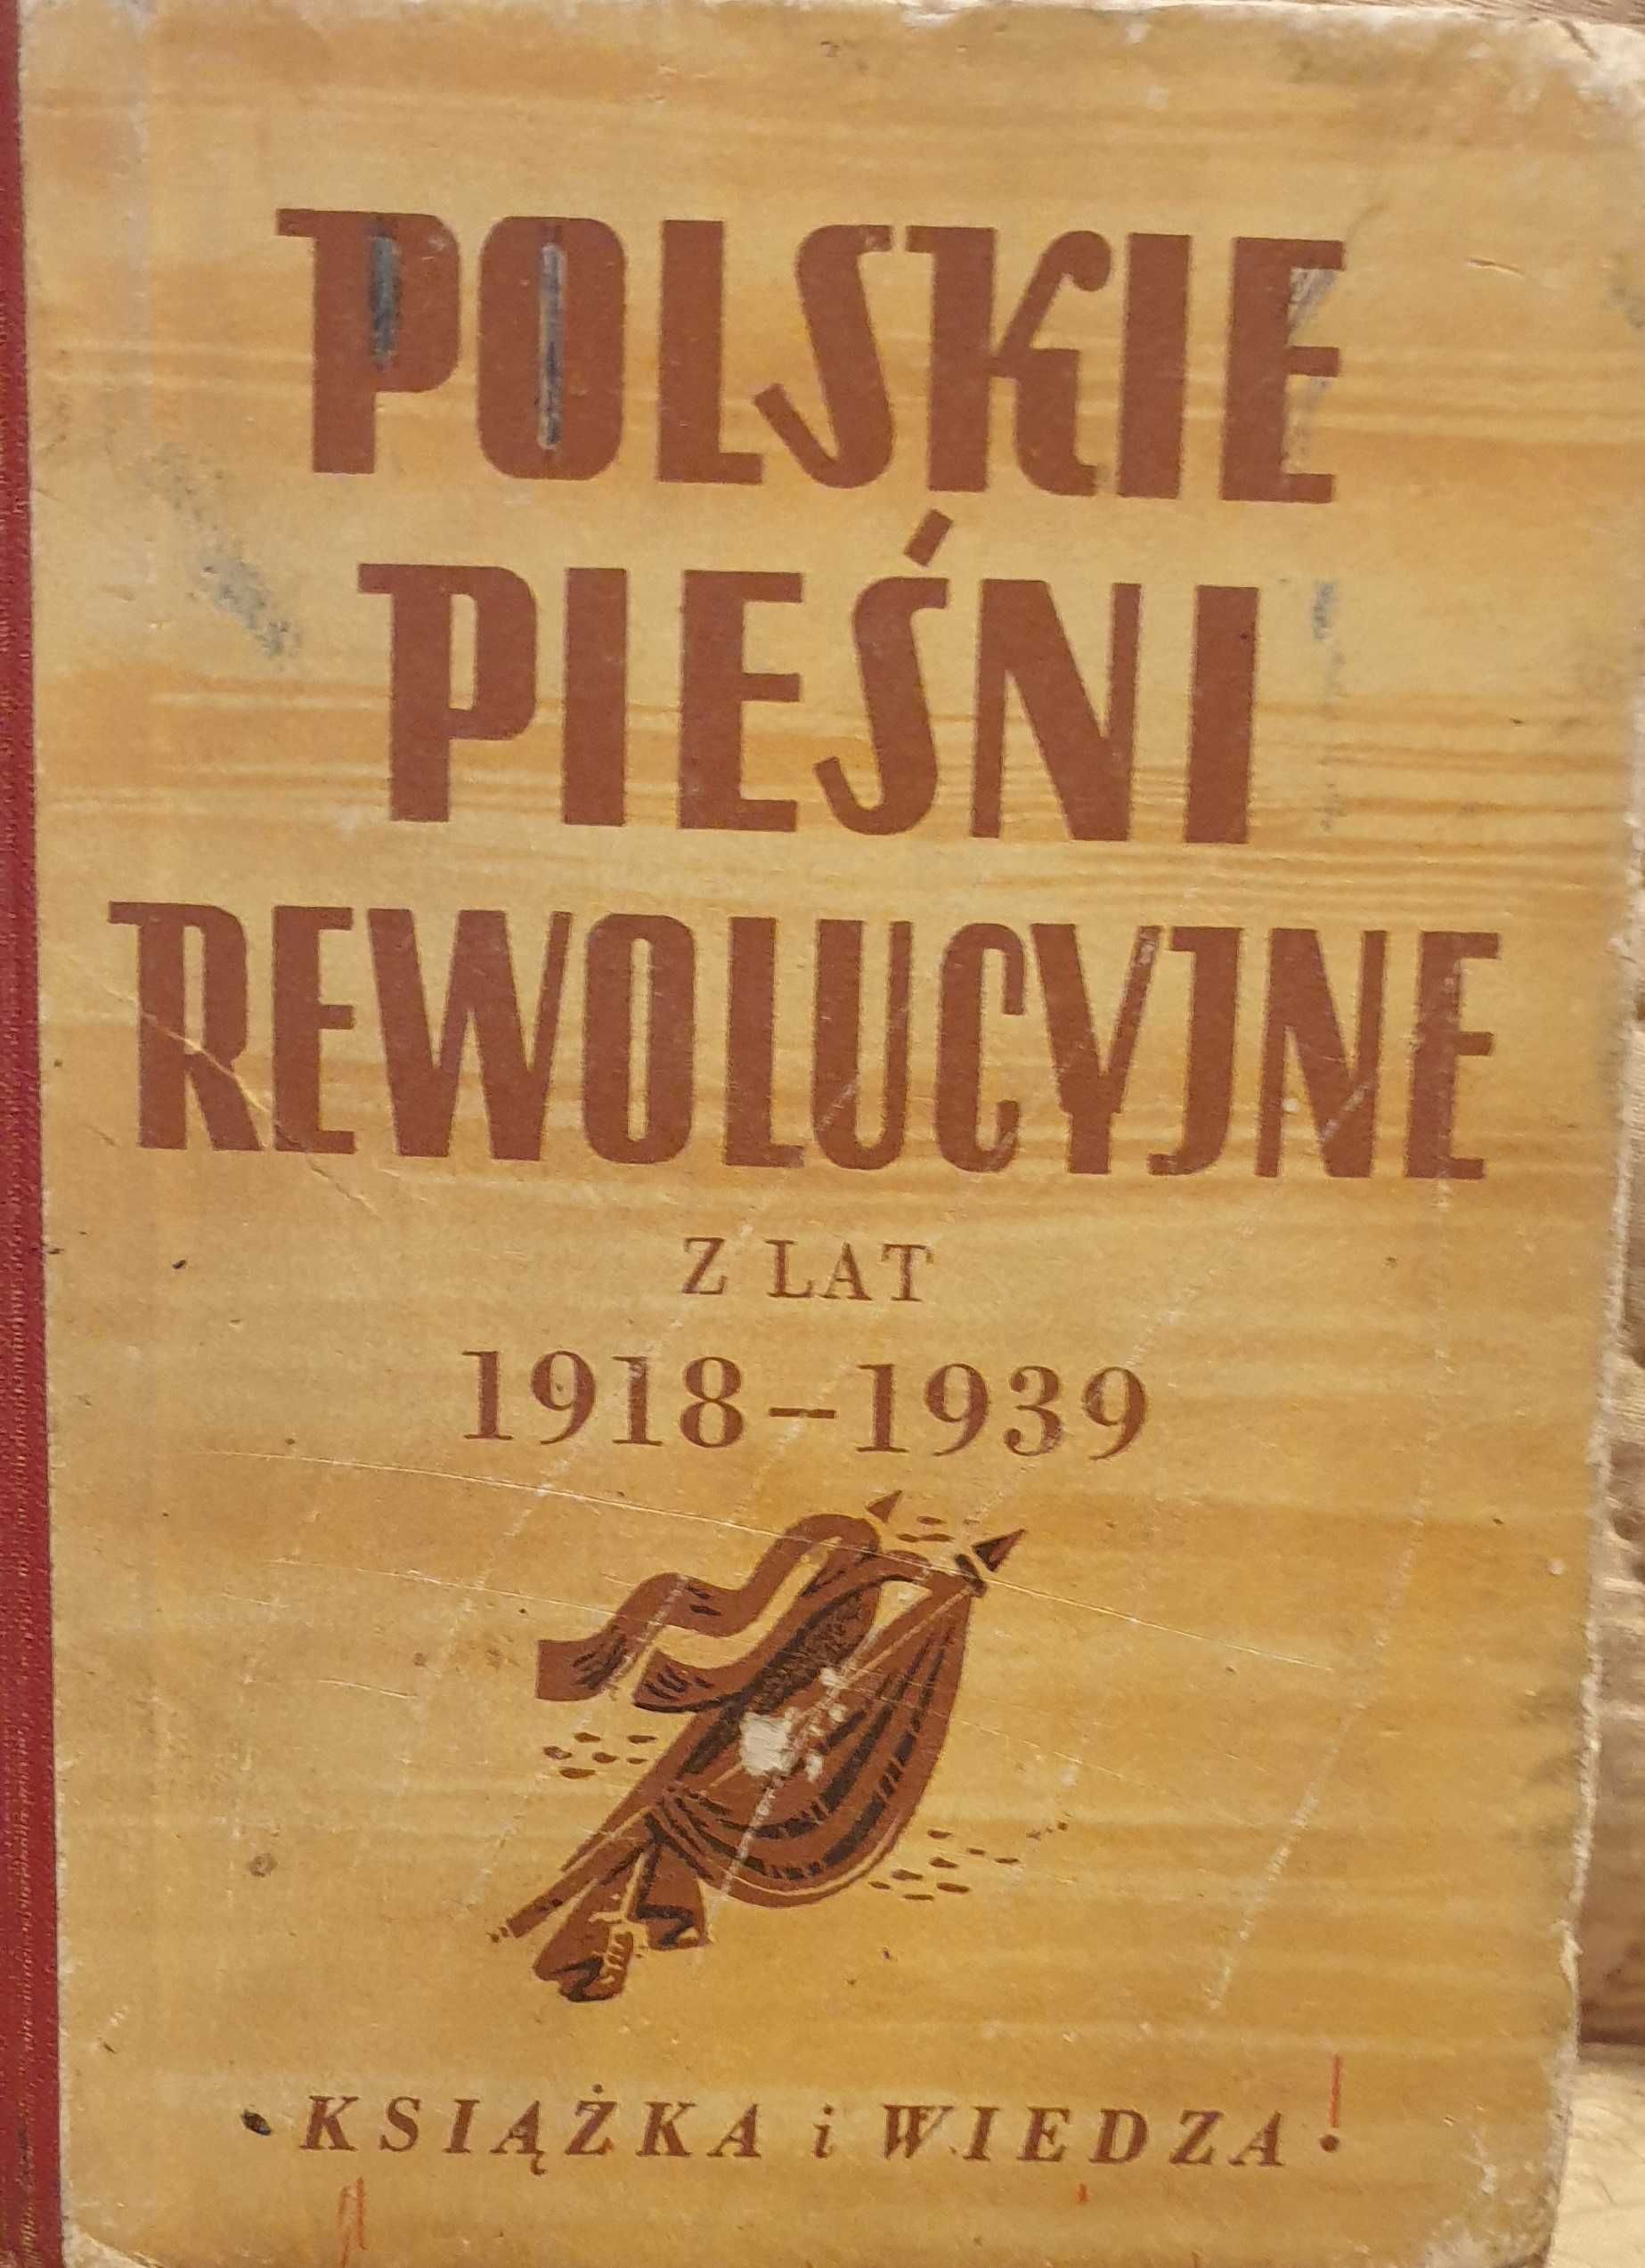 Polskie pieśni rewolucyjne z lat 1918 - 1939